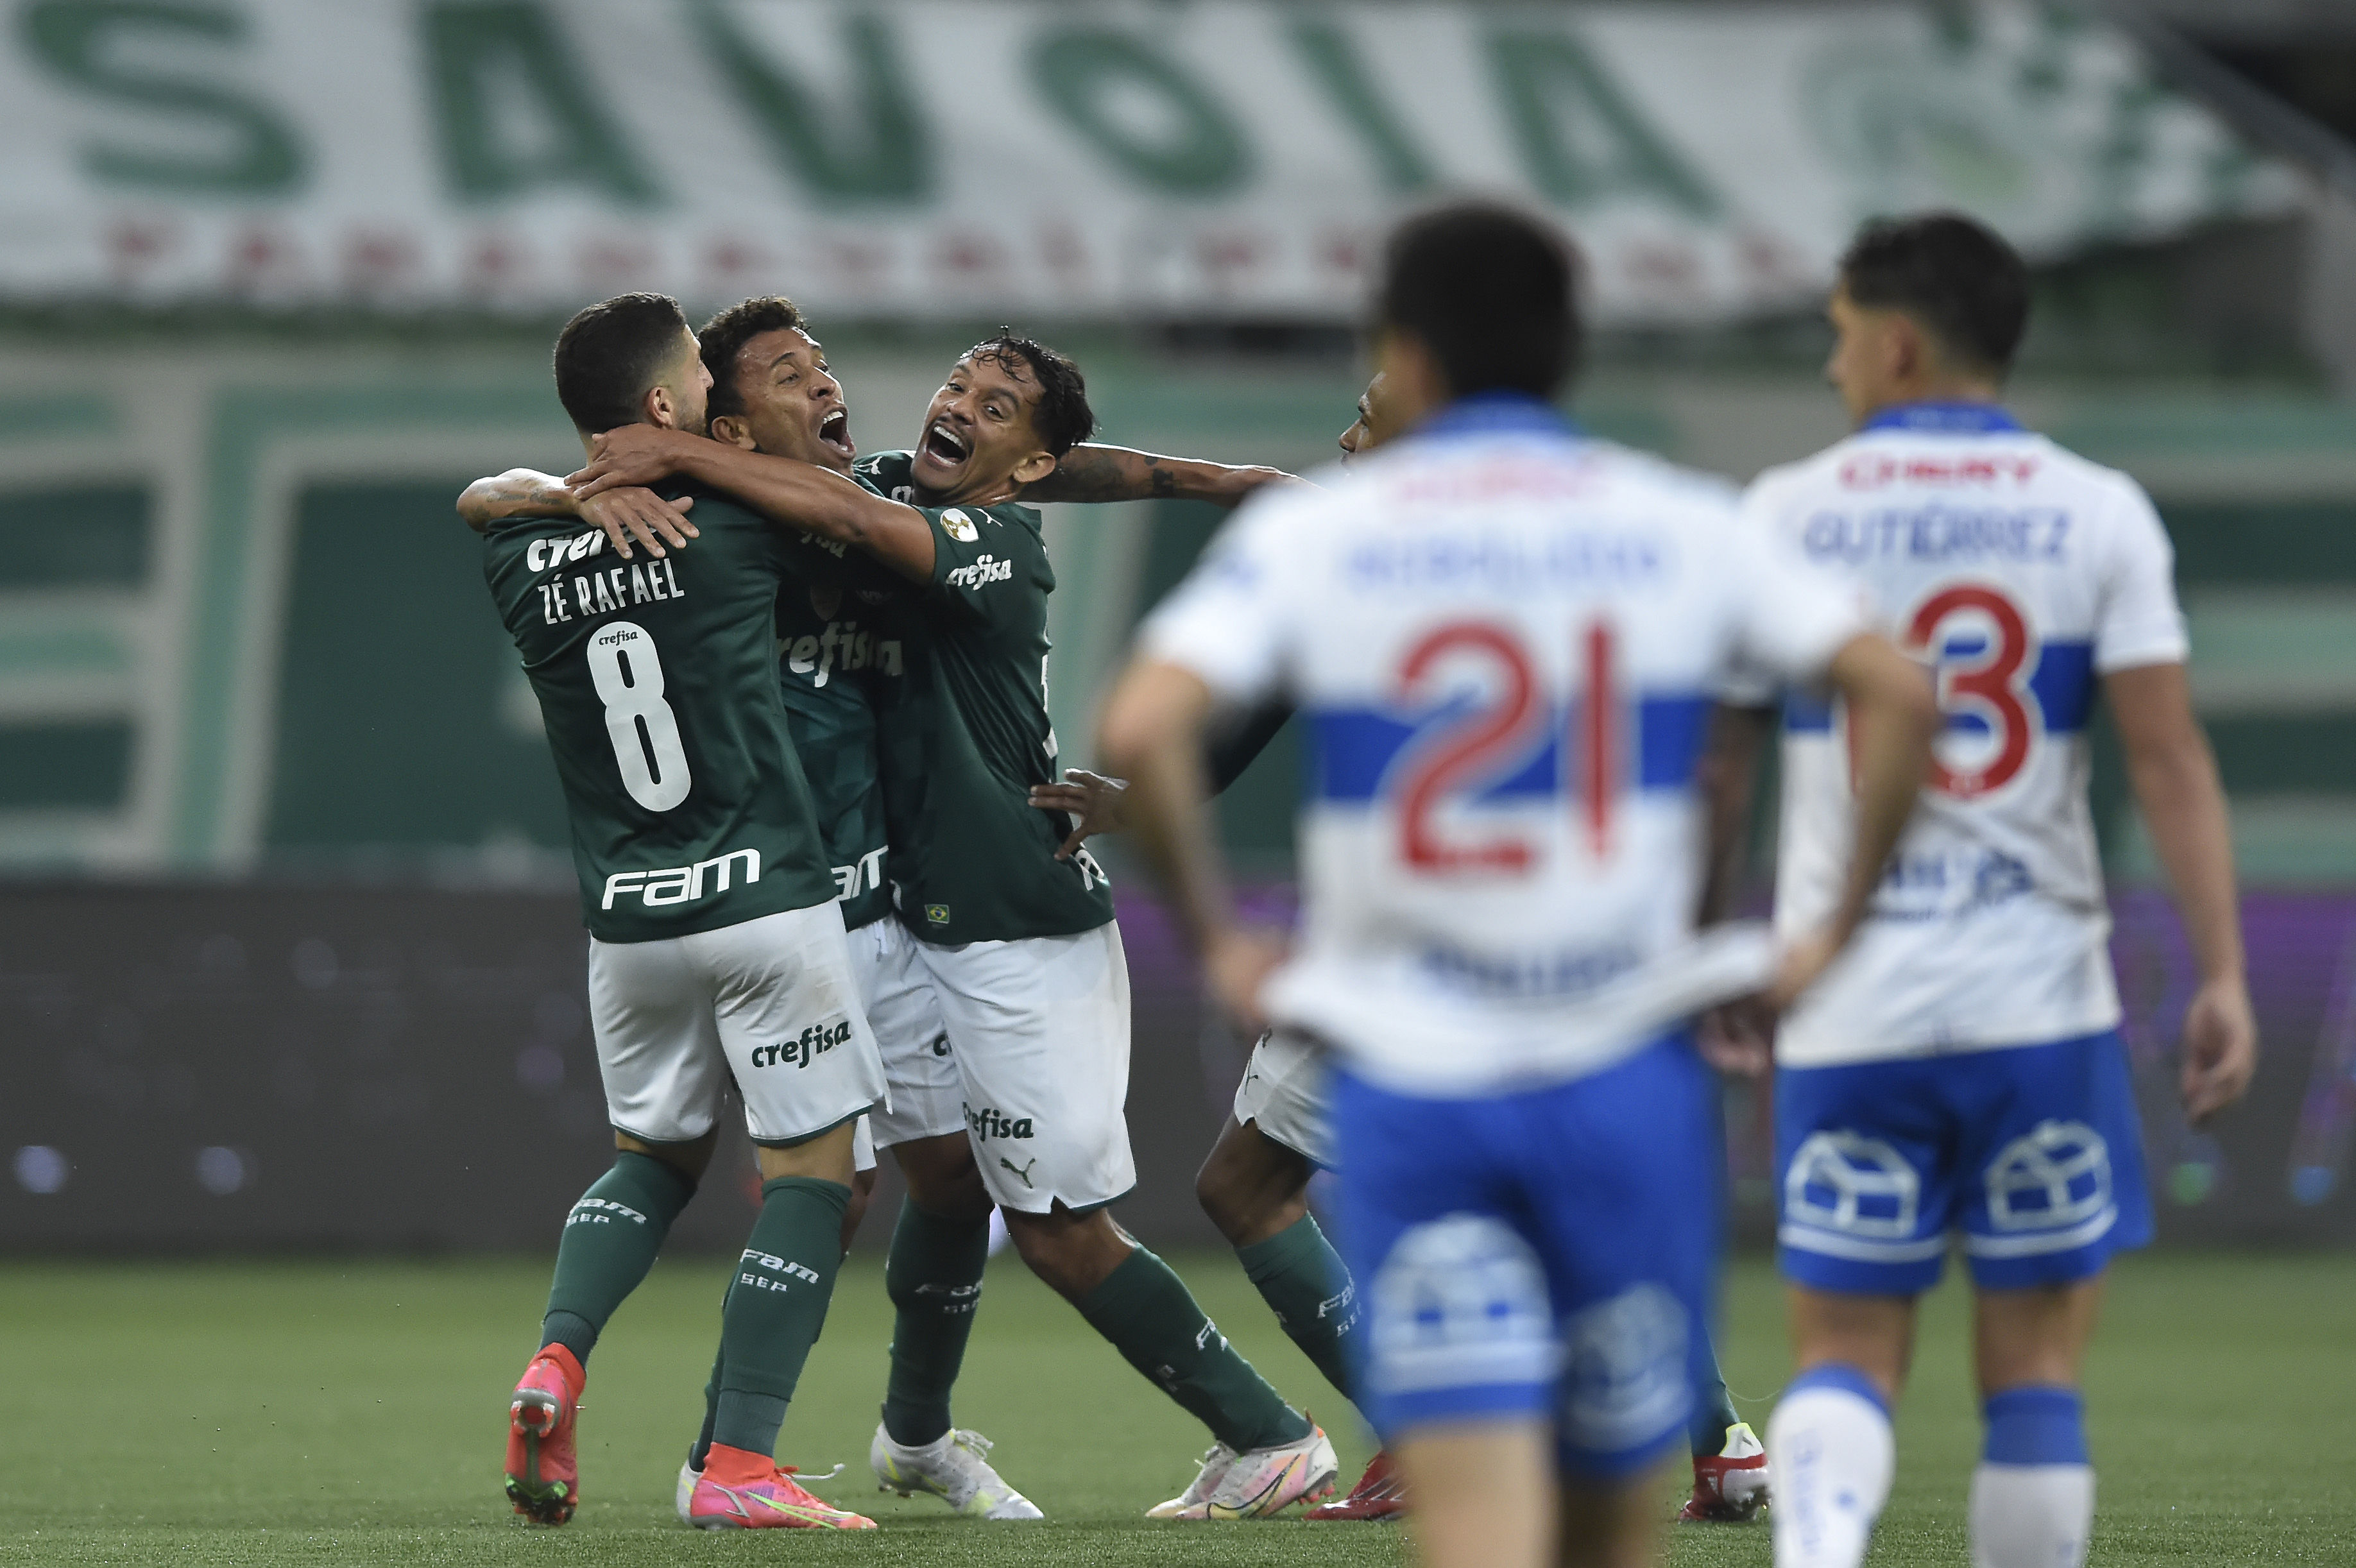 GE Palmeiras #151 - Segue contando! Mais uma vitória seguida, um time que passa confiança e o clássico pela Libertadores